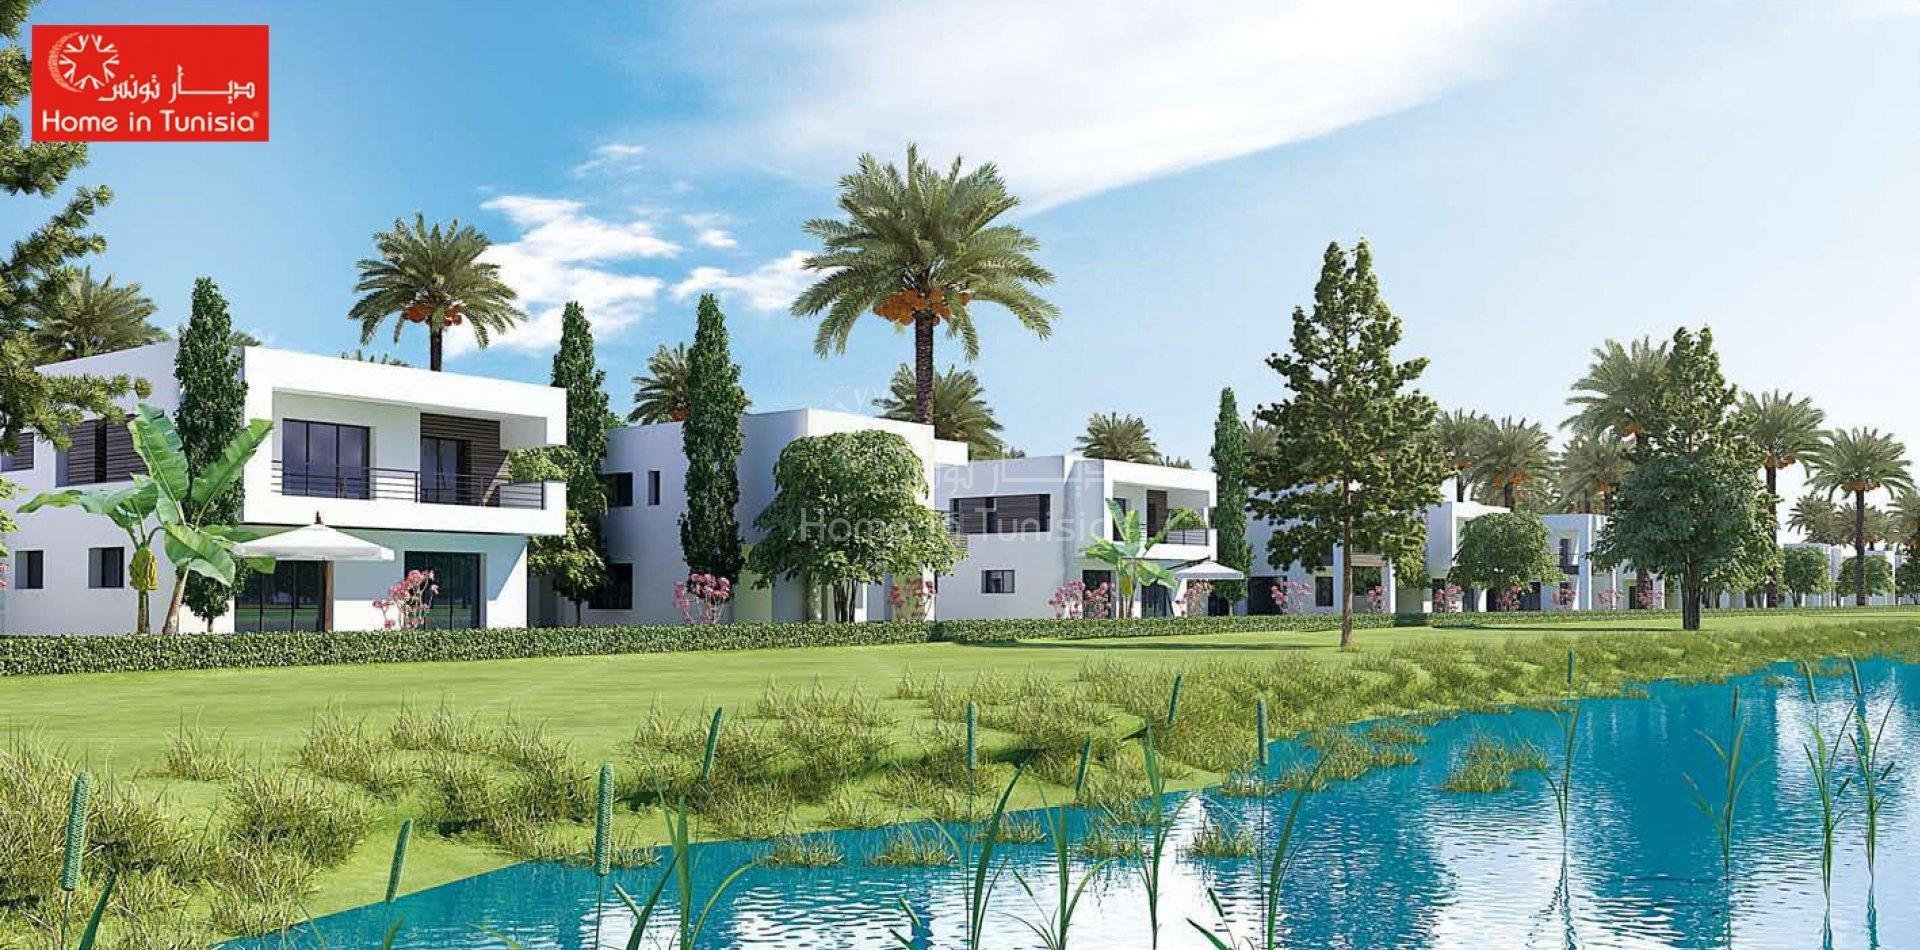 Grande villa isolée neuve vue sur le golf avec 4 chambres terrasse jardin piscine